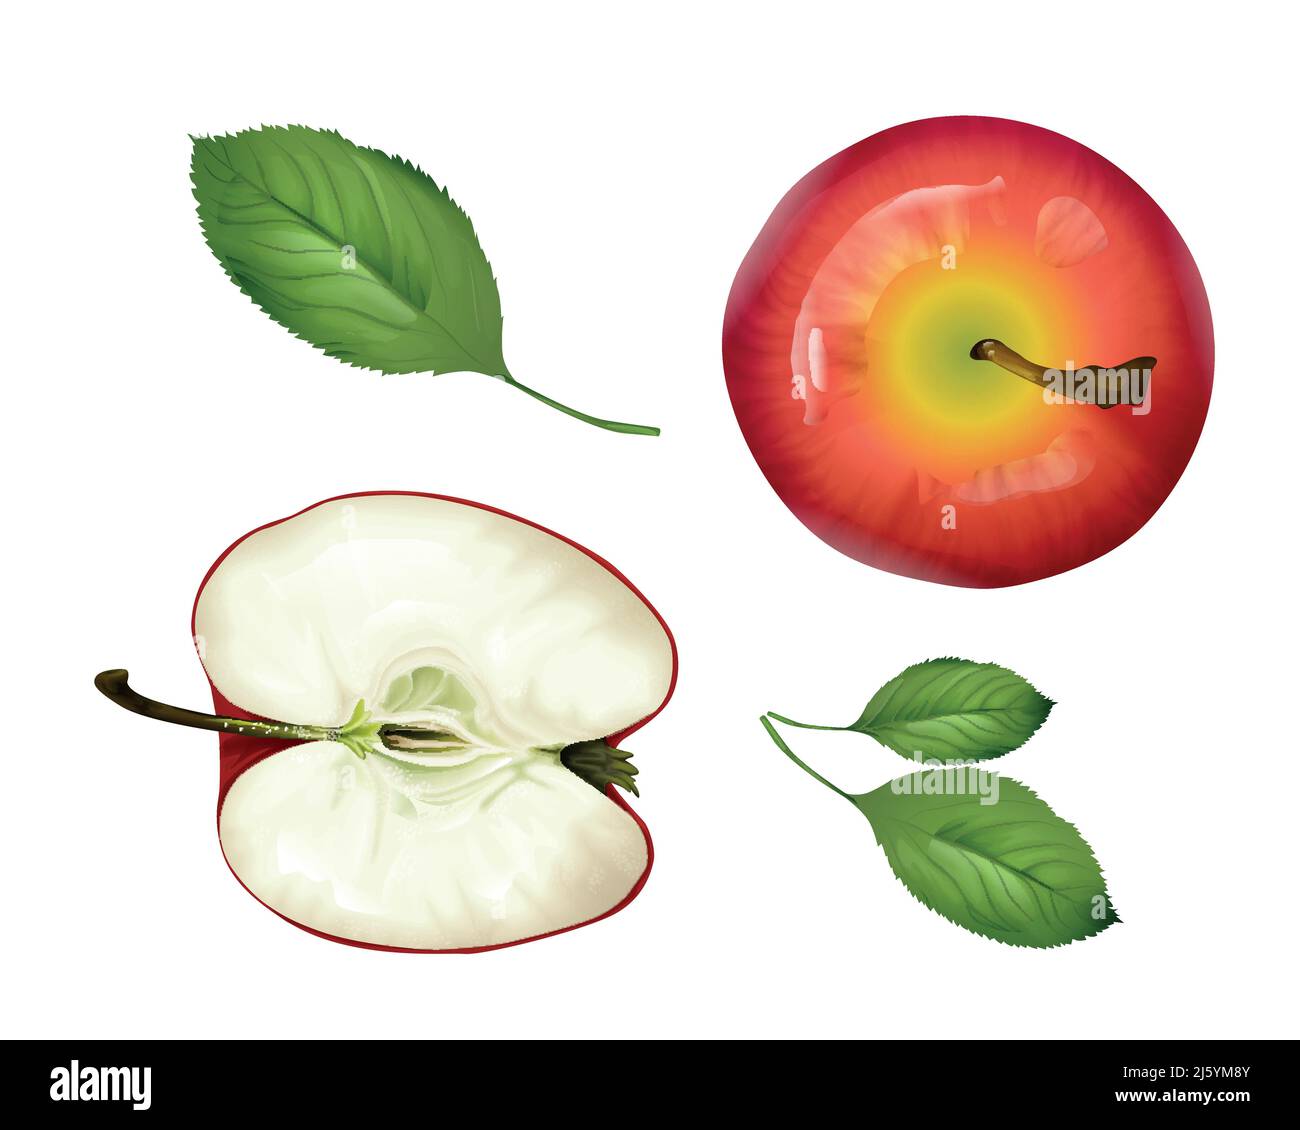 Conjunto de vista vectorial realista de la parte superior de la manzana. 3d fruta madura cortada a la mitad, hojas enteras y verdes. Alimentos naturales orgánicos frescos llenos de vitaminas para una alimentación saludable Ilustración del Vector